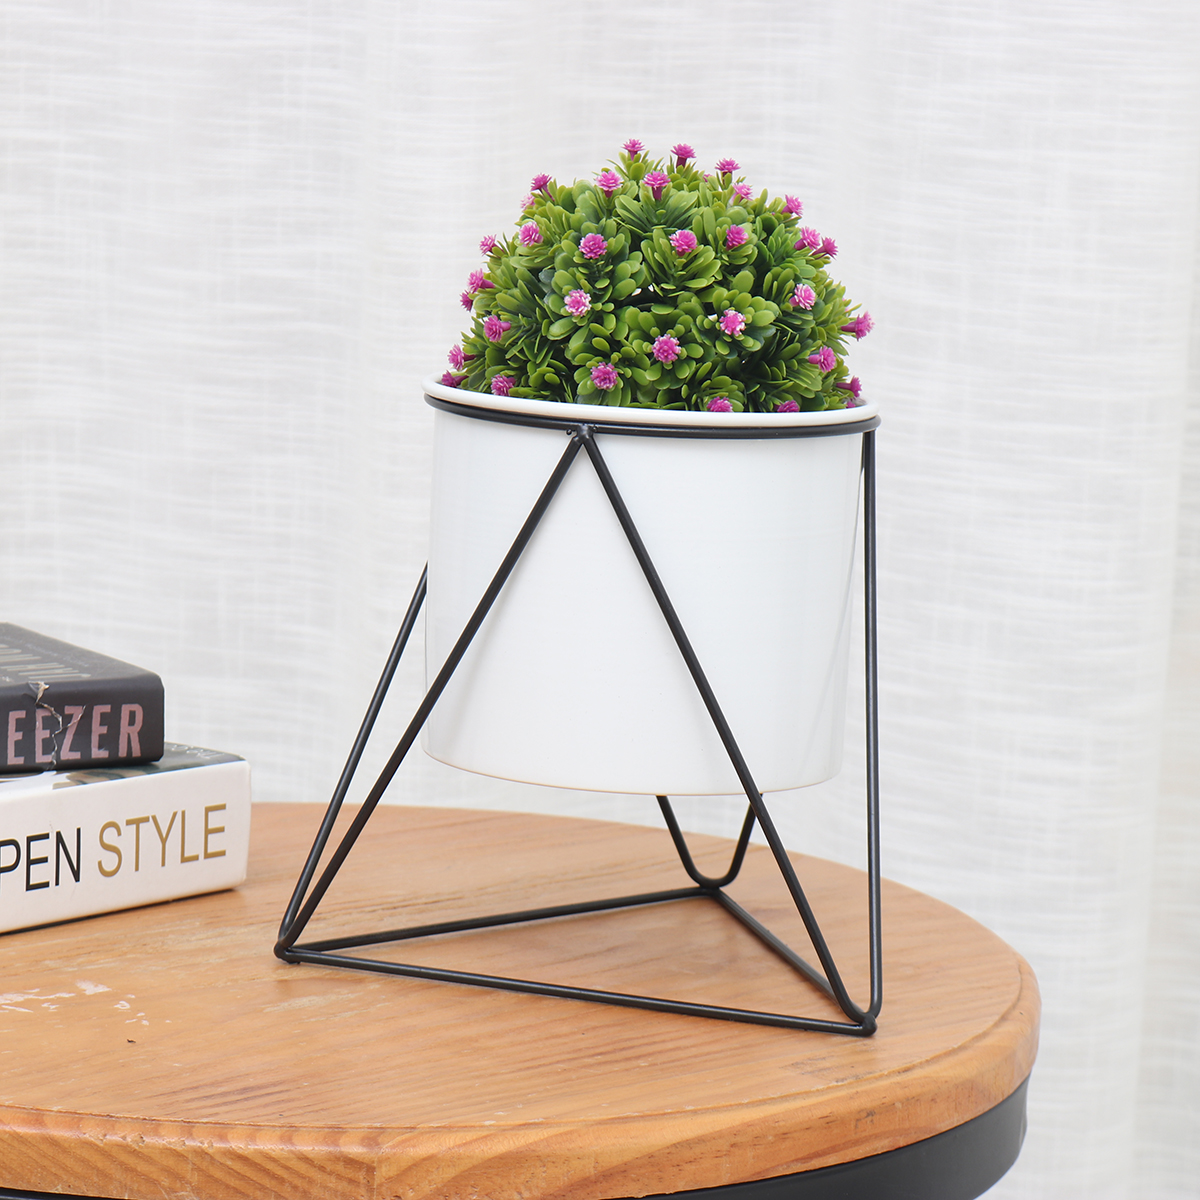 Metal-Flower-Pot-Stand-Indoor-Outdoor-Garden-Balcony-Desktop-Plant-Rack-Iron-Flower-Pot-Shelf-Home-O-1787537-9